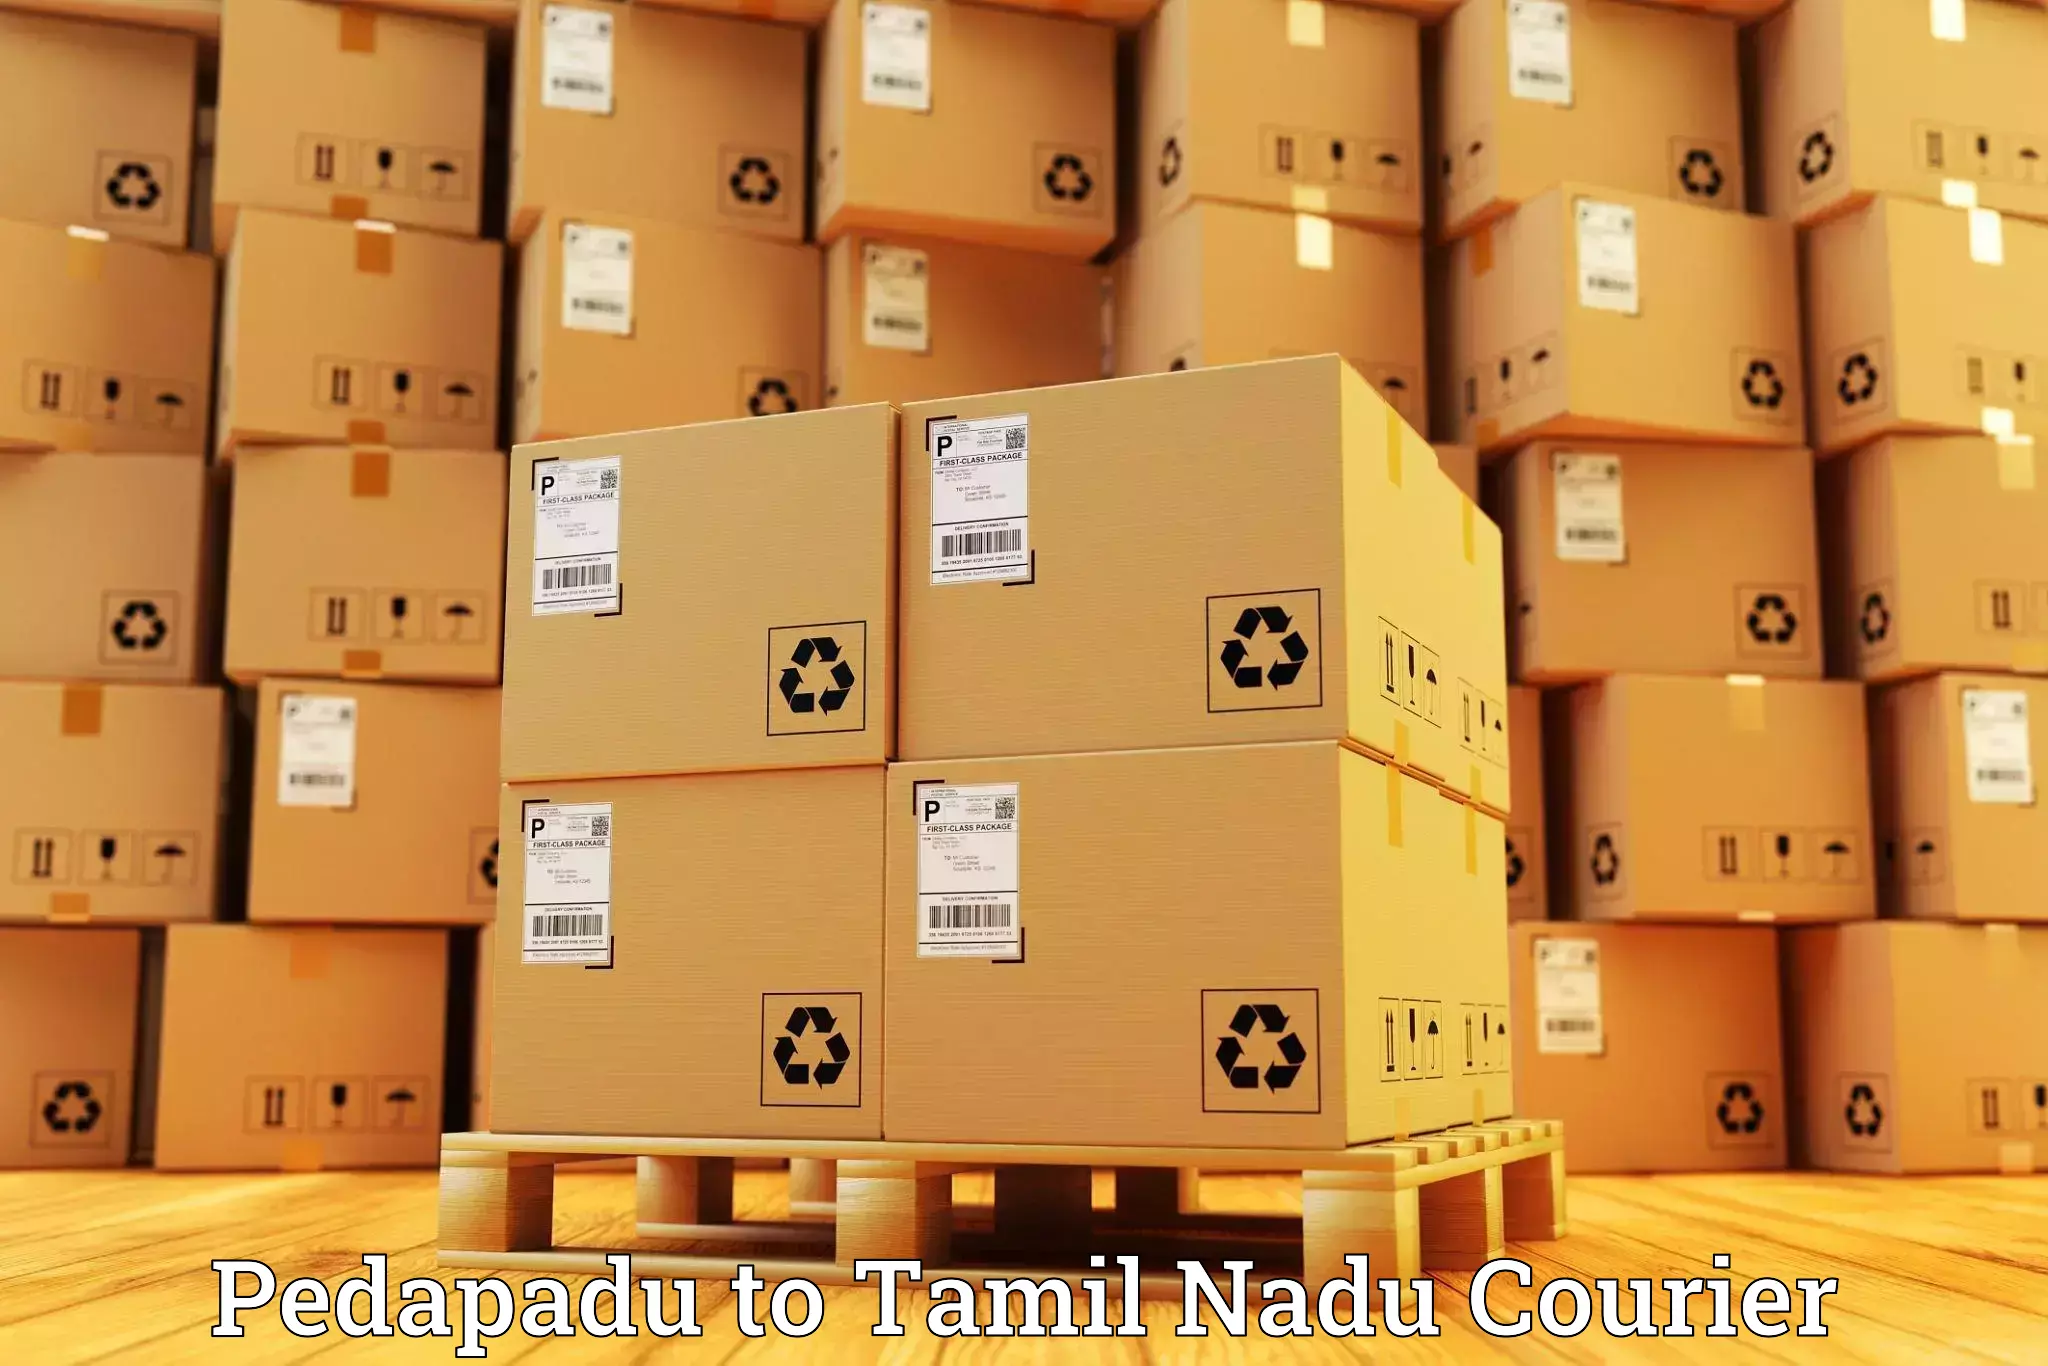 Express package handling Pedapadu to Sathyamangalam